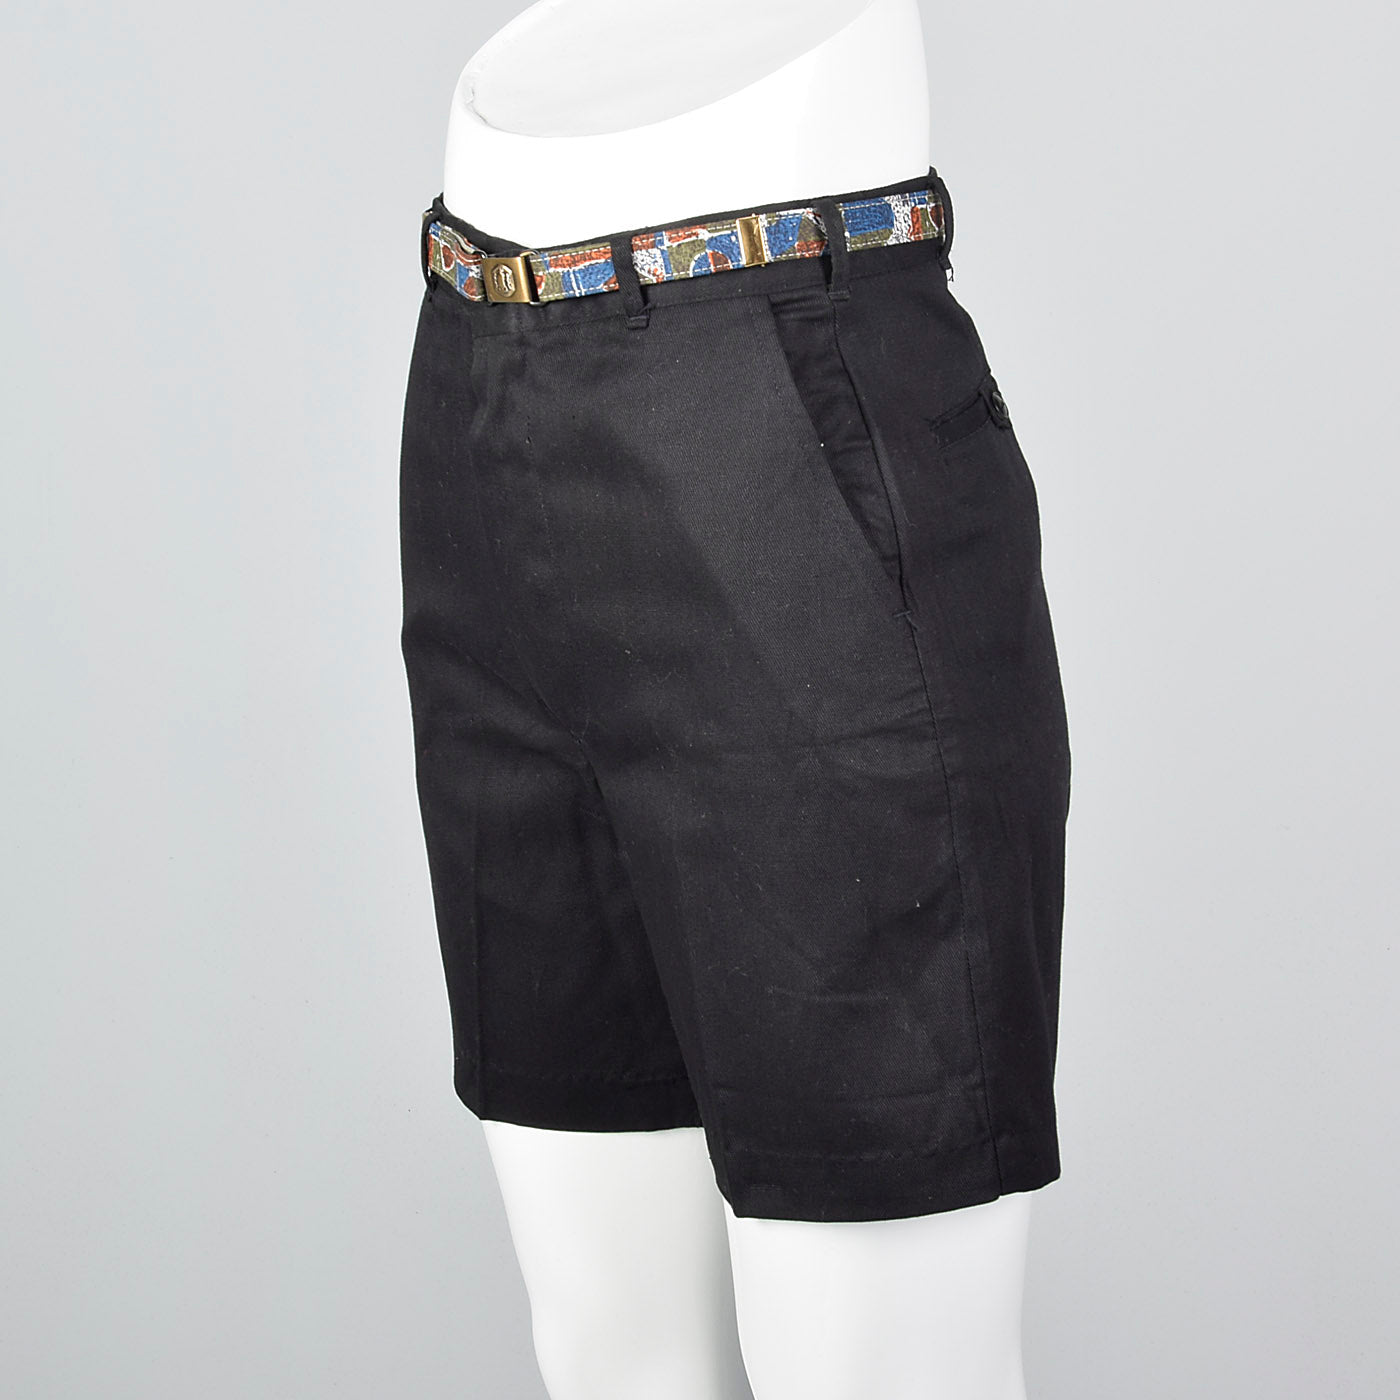 1950s Deadstock Black Bermuda Shorts